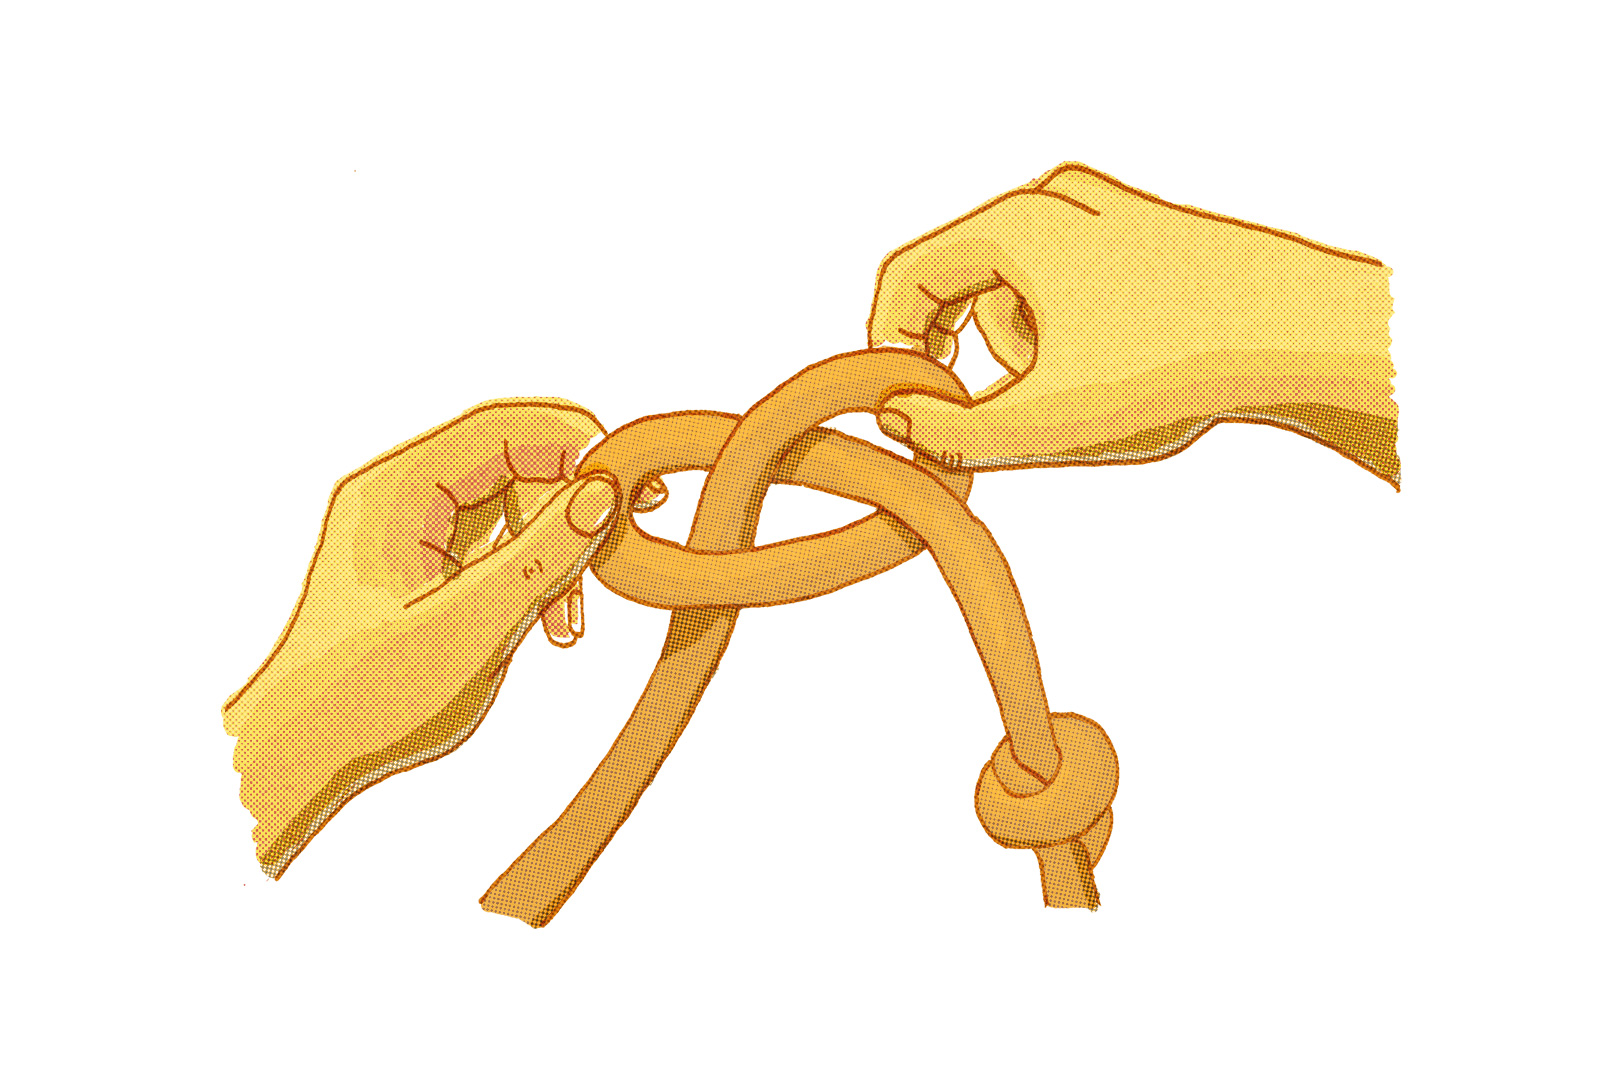 Illustration von zwei Händen, die einen Knoten in einem Seil lösen. Das Seil ist geschlungen und in der Mitte gekreuzt, wobei die Enden von den Händen durchgezogen werden. Ein Ende des Seils ist mit einem einfachen Überhandknoten versehen. Die Hände sind so positioniert, dass sie den Bindungsvorgang abschließen.